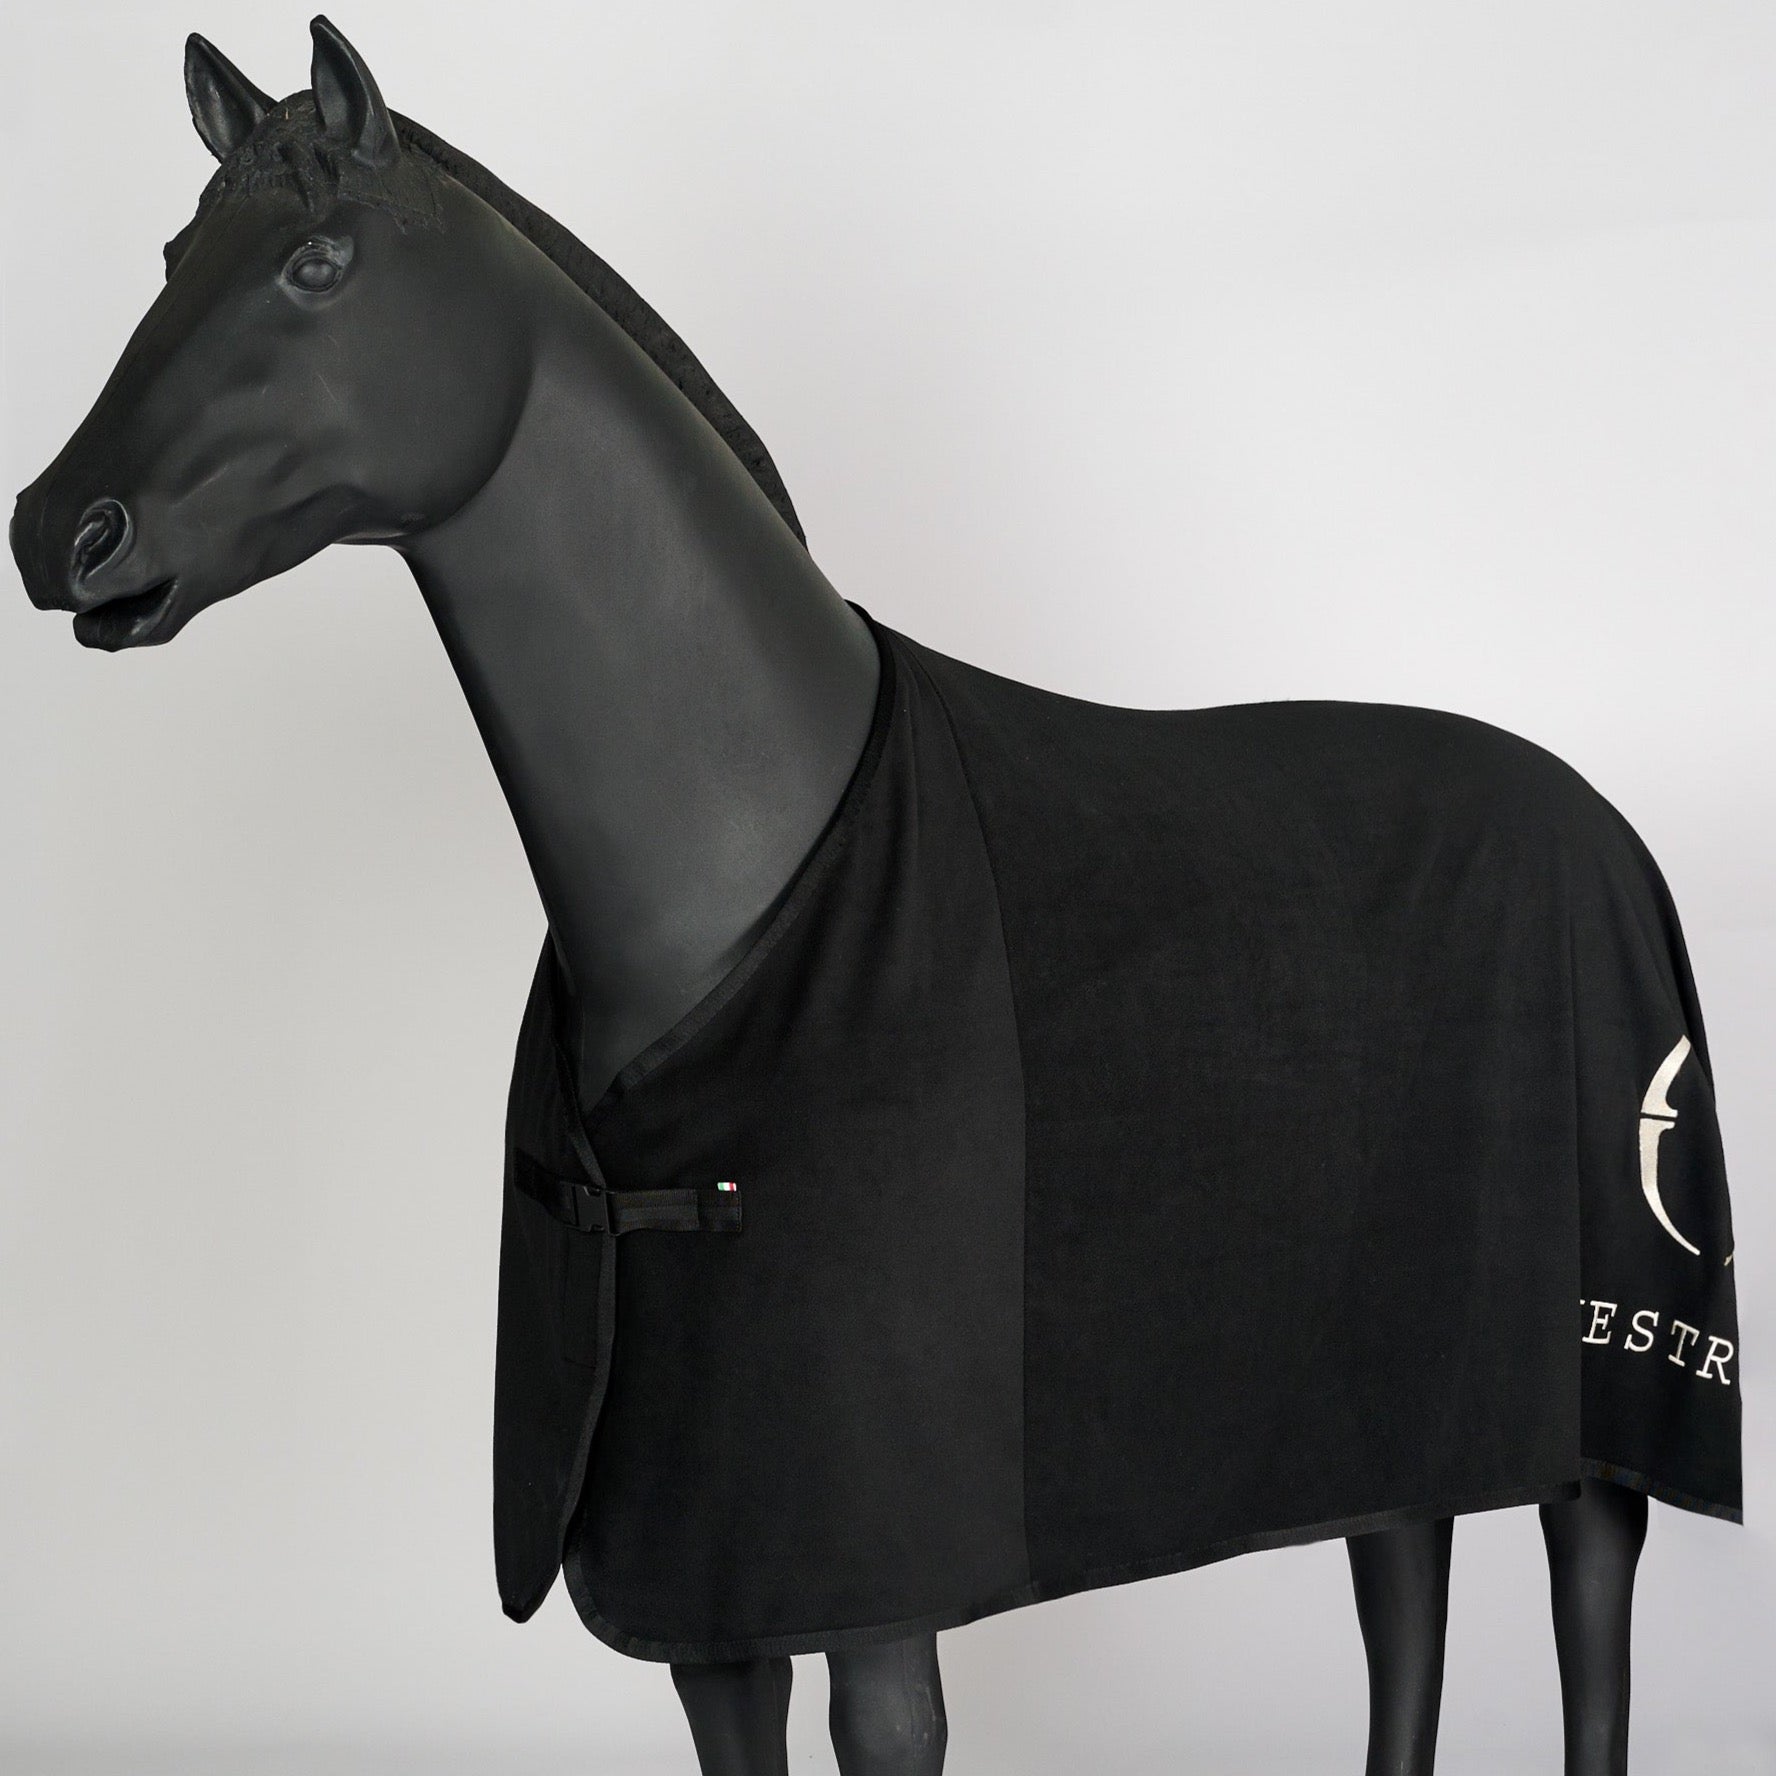 Die Vestrum Fleece Pferdedecke Vicenza ist die perfekte Wahl für Pferdebesitzer, die nur das Beste für ihre Tiere wollen. Mit ihrer hervorragenden Qualität und ihrem einzigartigen Design werden Sie und Ihr Pferd diese Decke lieben.